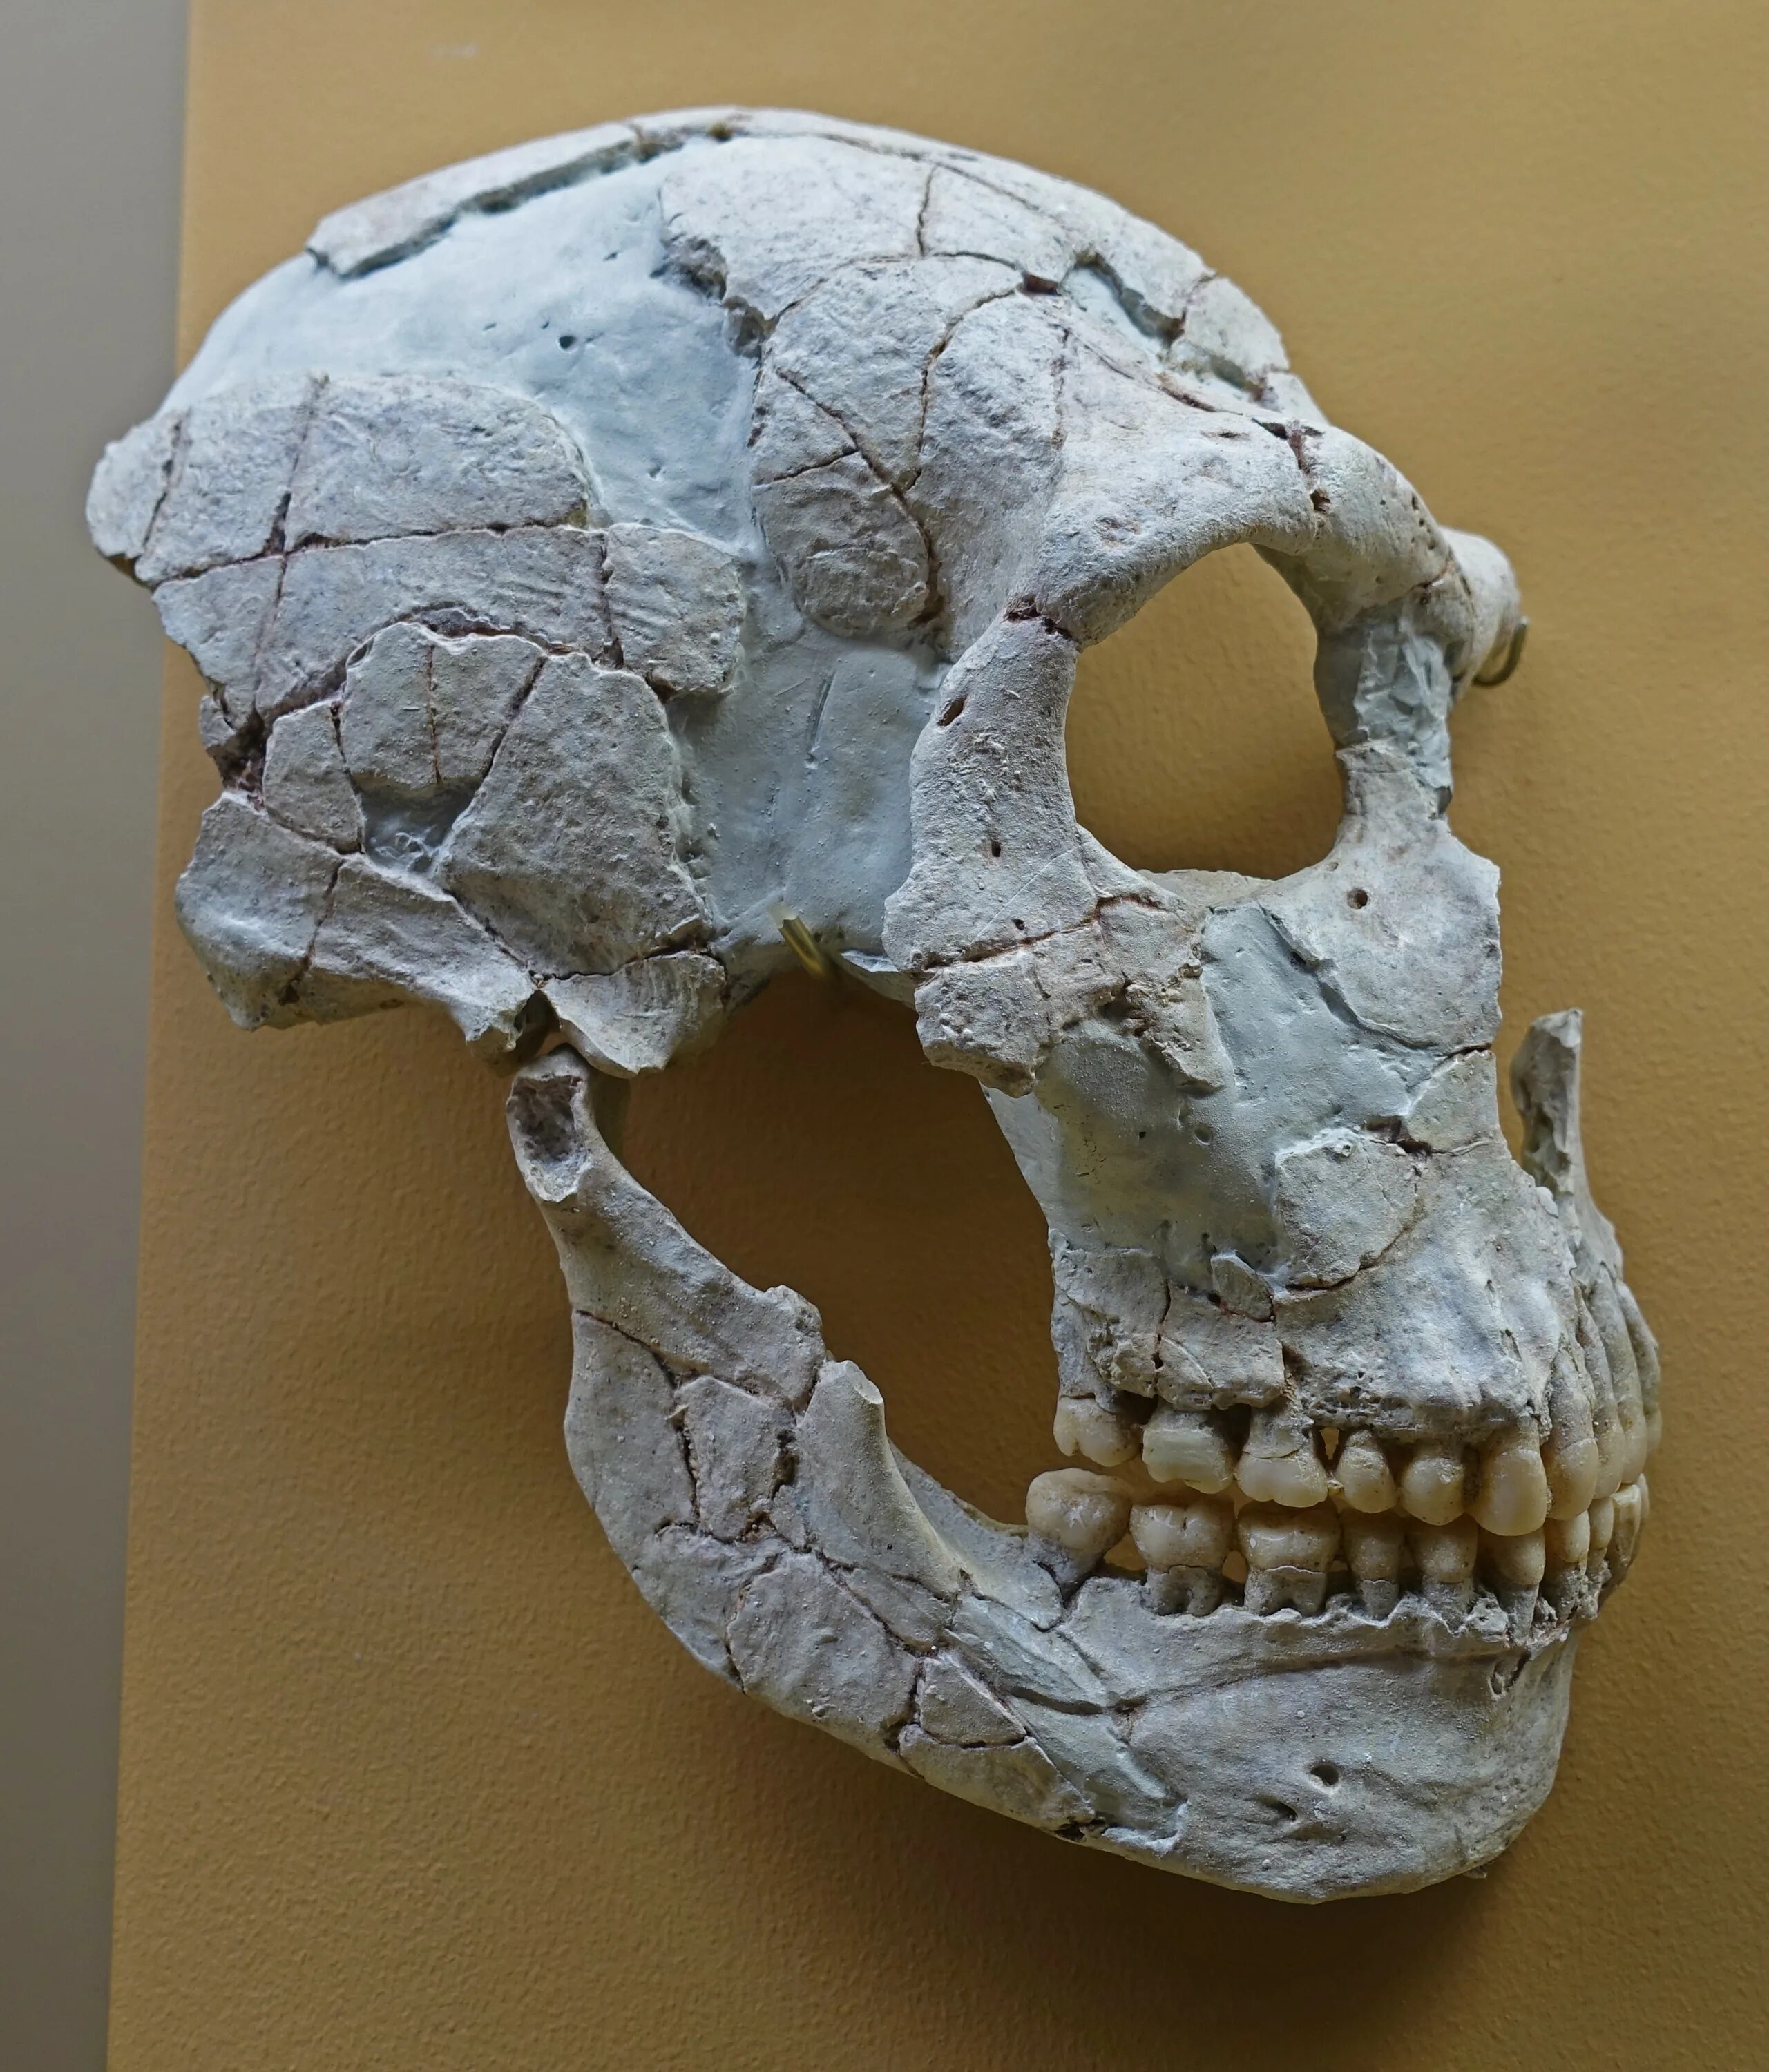 Череп древнего человека и современного. Музей Неандерталь Эволюция черепа.